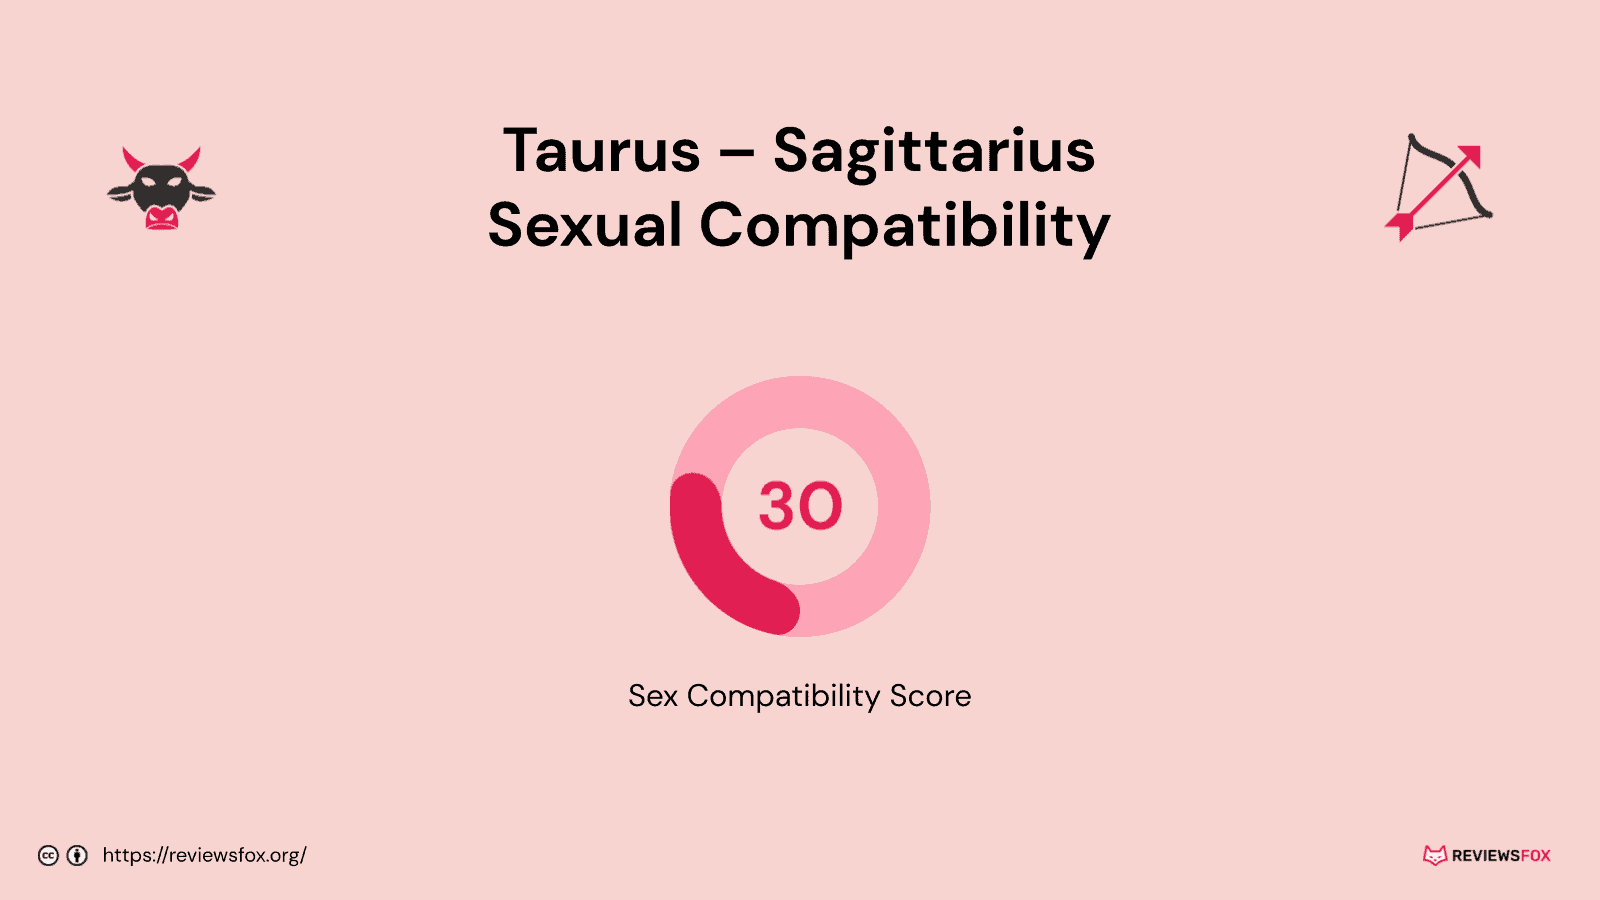 Taurus and Sagittarius sexual compatibility